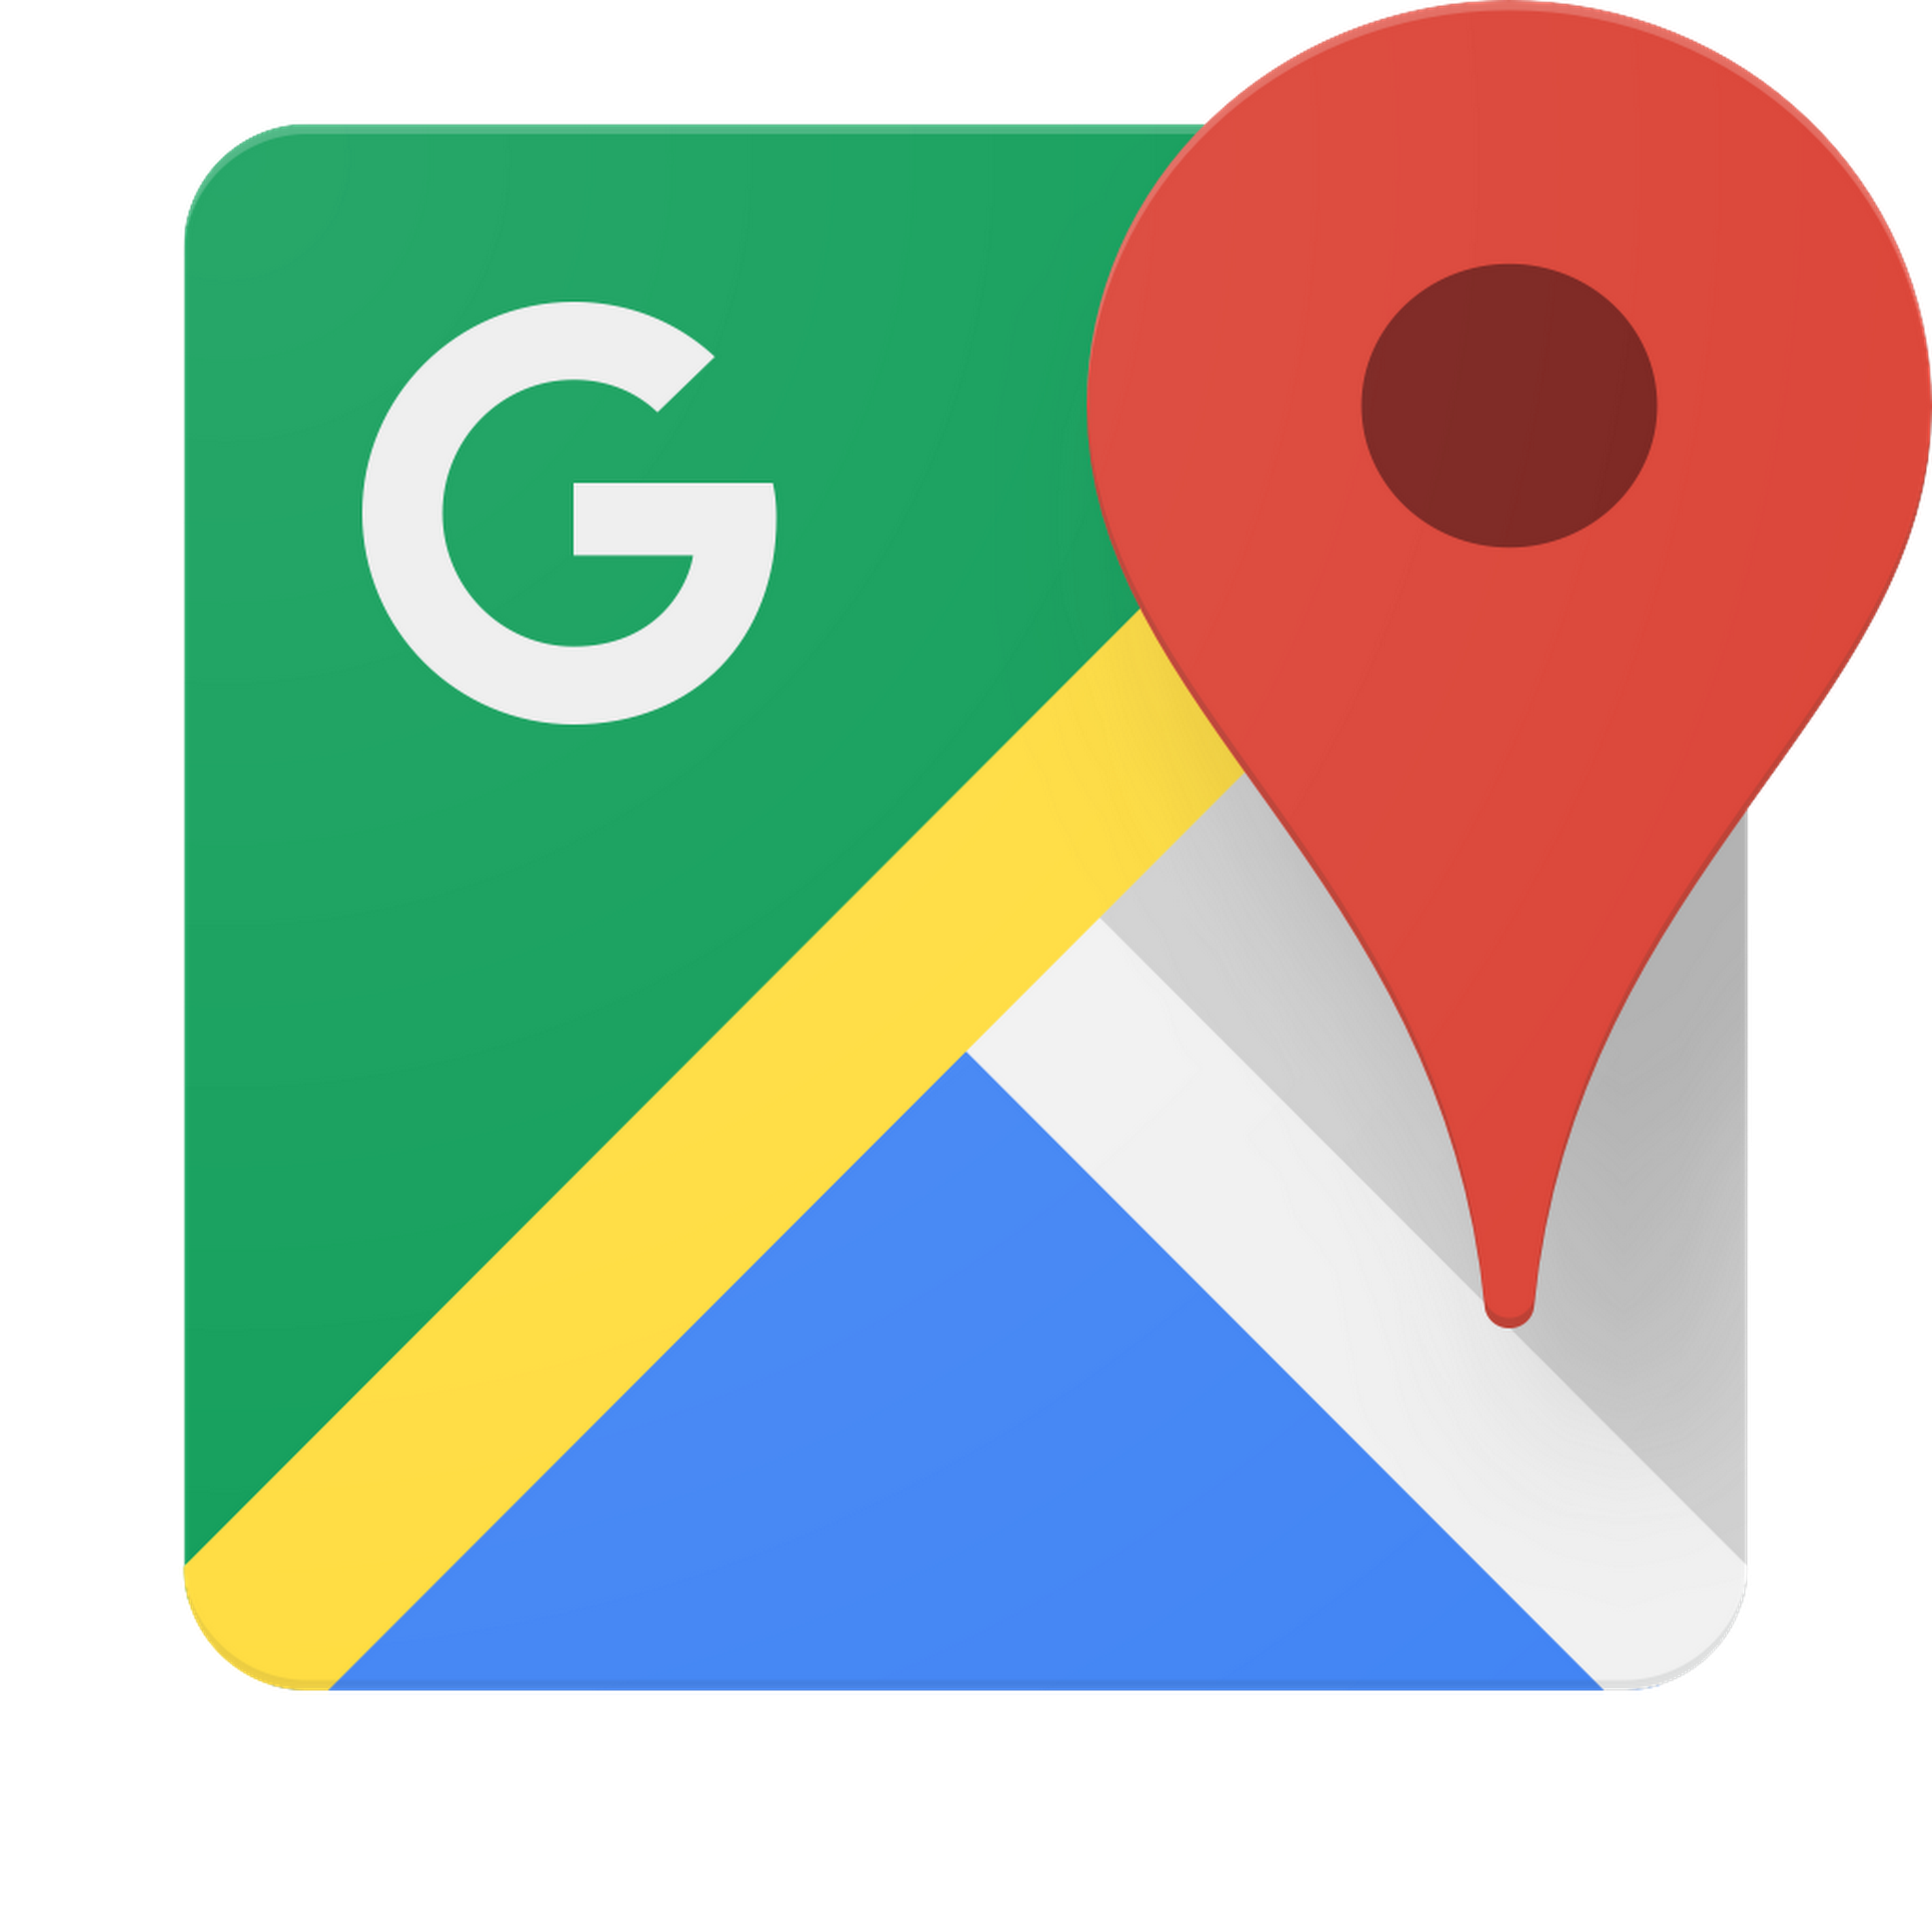 Image of the Google Maps logo.